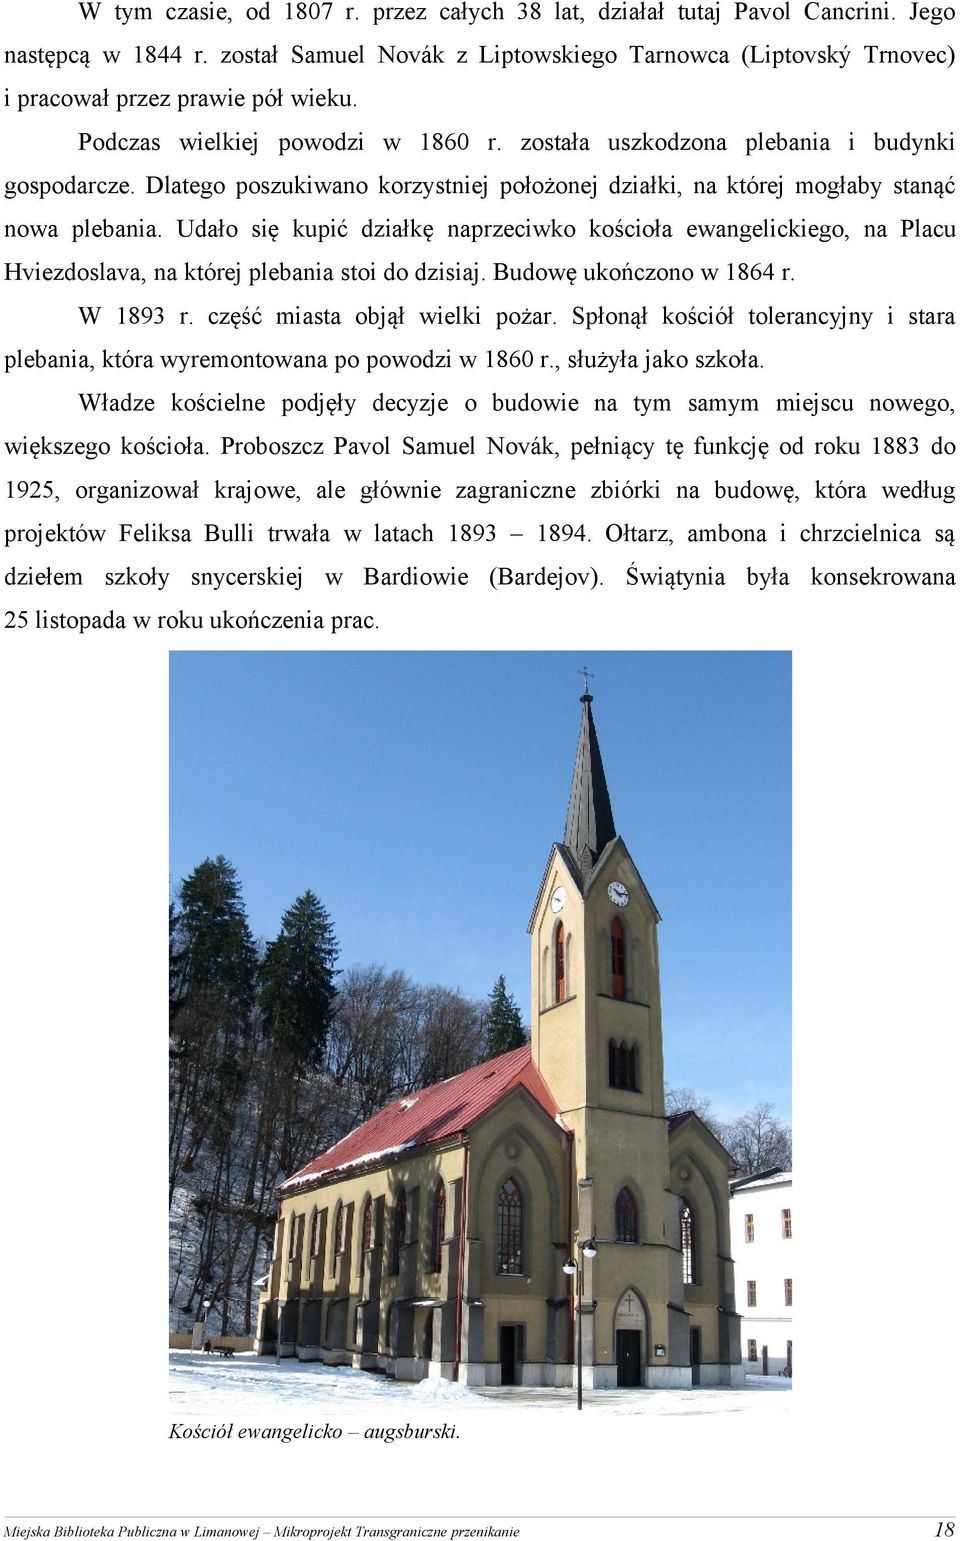 Udało się kupić działkę naprzeciwko kościoła ewangelickiego, na Placu Hviezdoslava, na której plebania stoi do dzisiaj. Budowę ukończono w 1864 r. W 1893 r. część miasta objął wielki pożar.